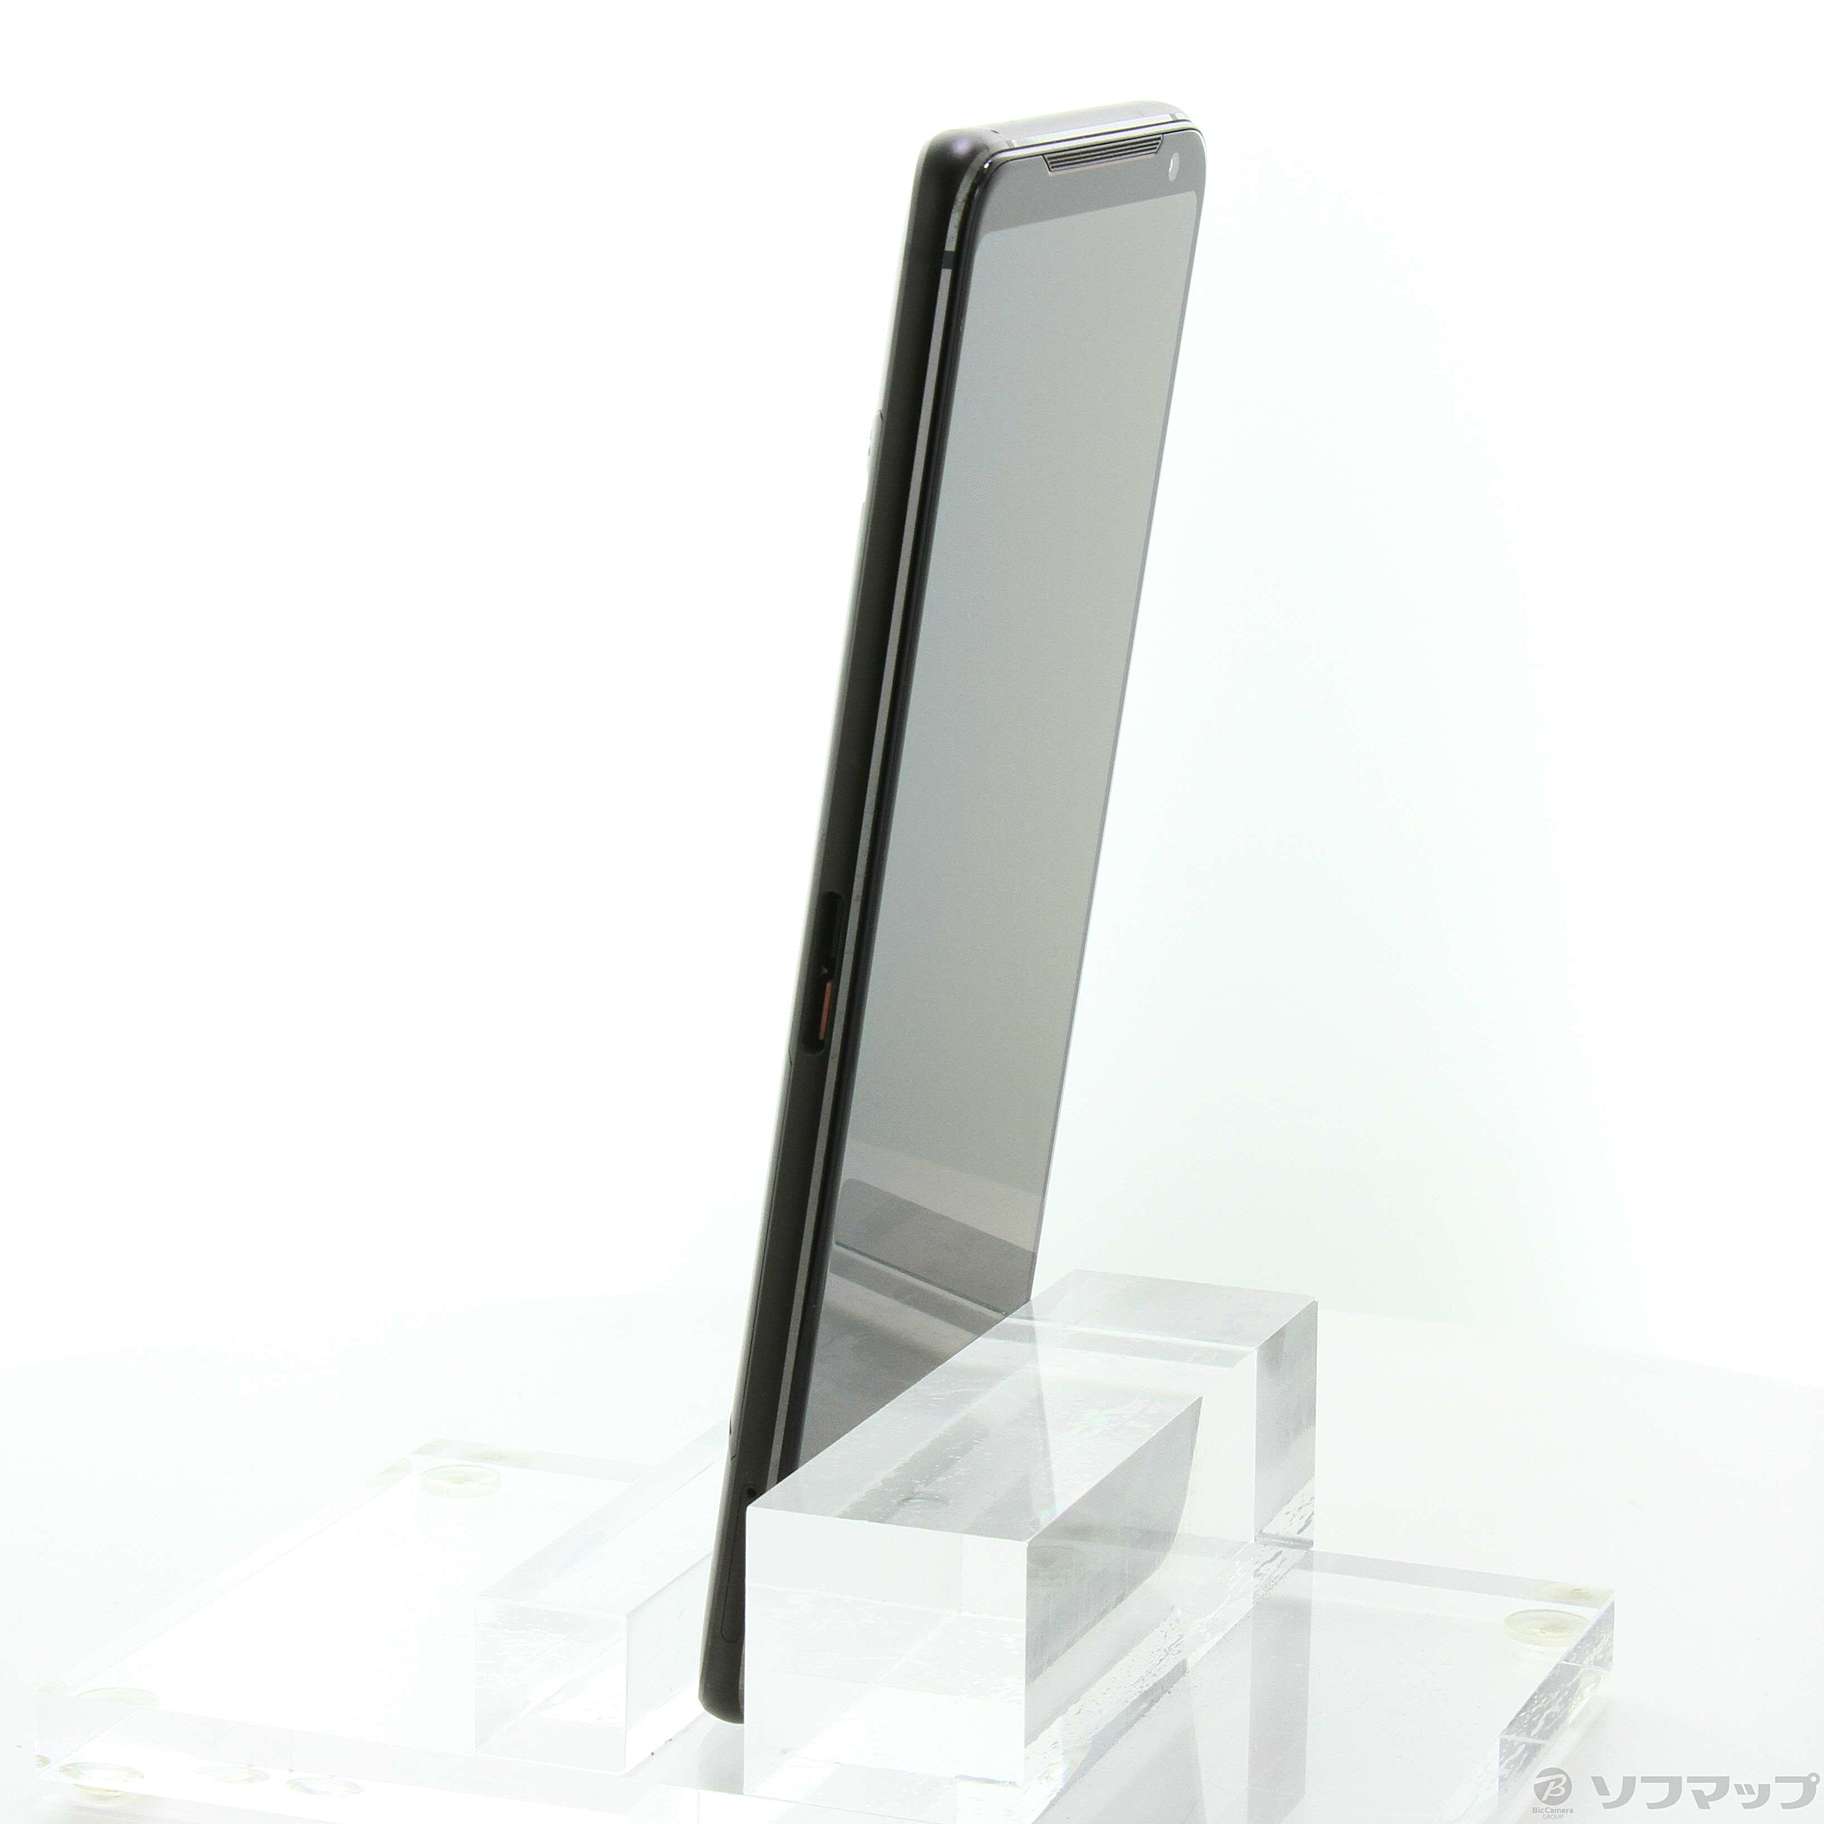 中古】ROG Phone II 1TB ブラック ZS660KL-BK1TR12 SIMフリー